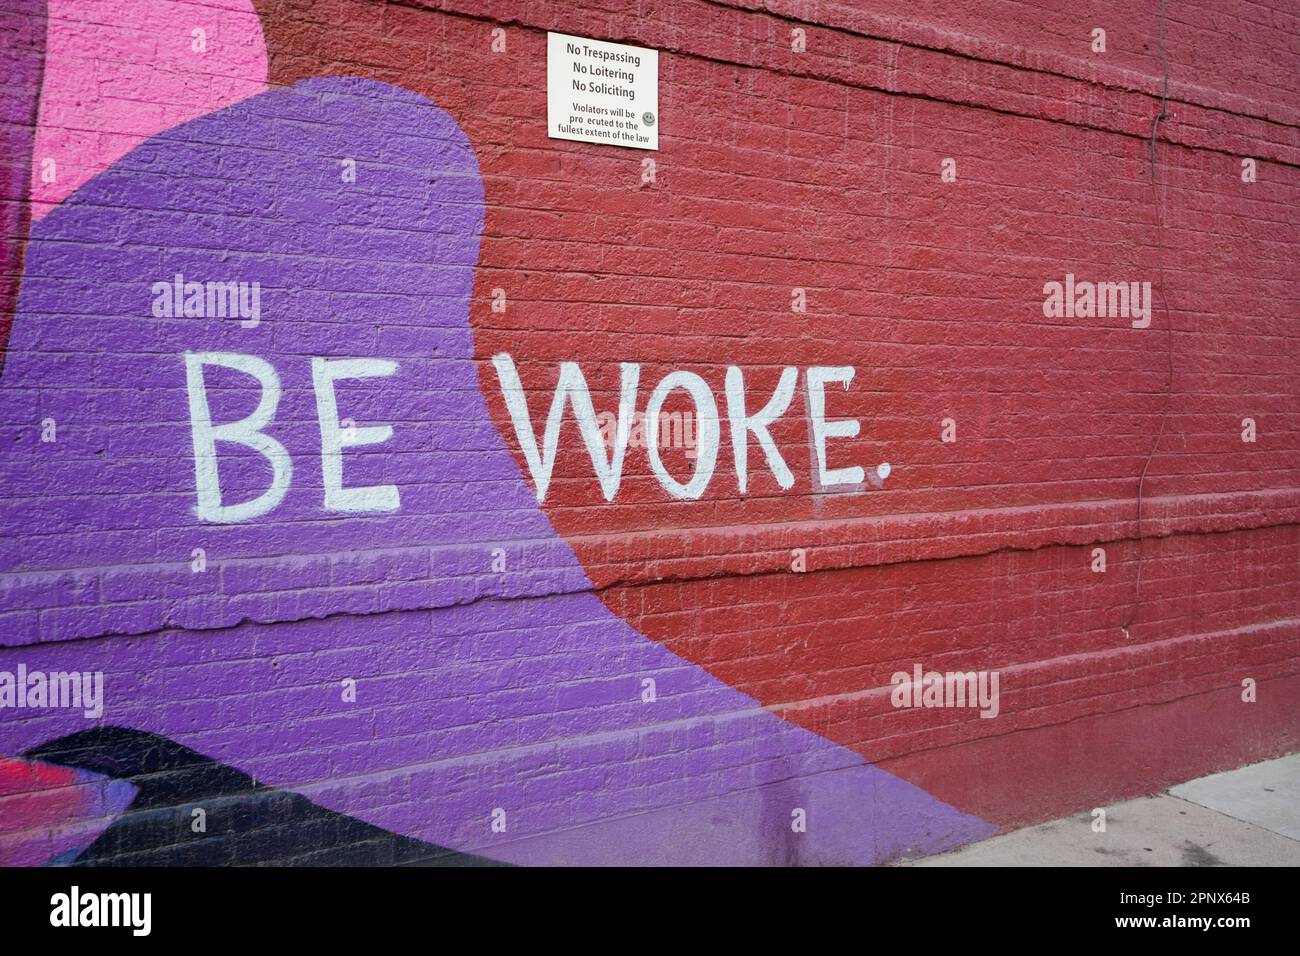 Be woke sign on a brick wall Stock Photo